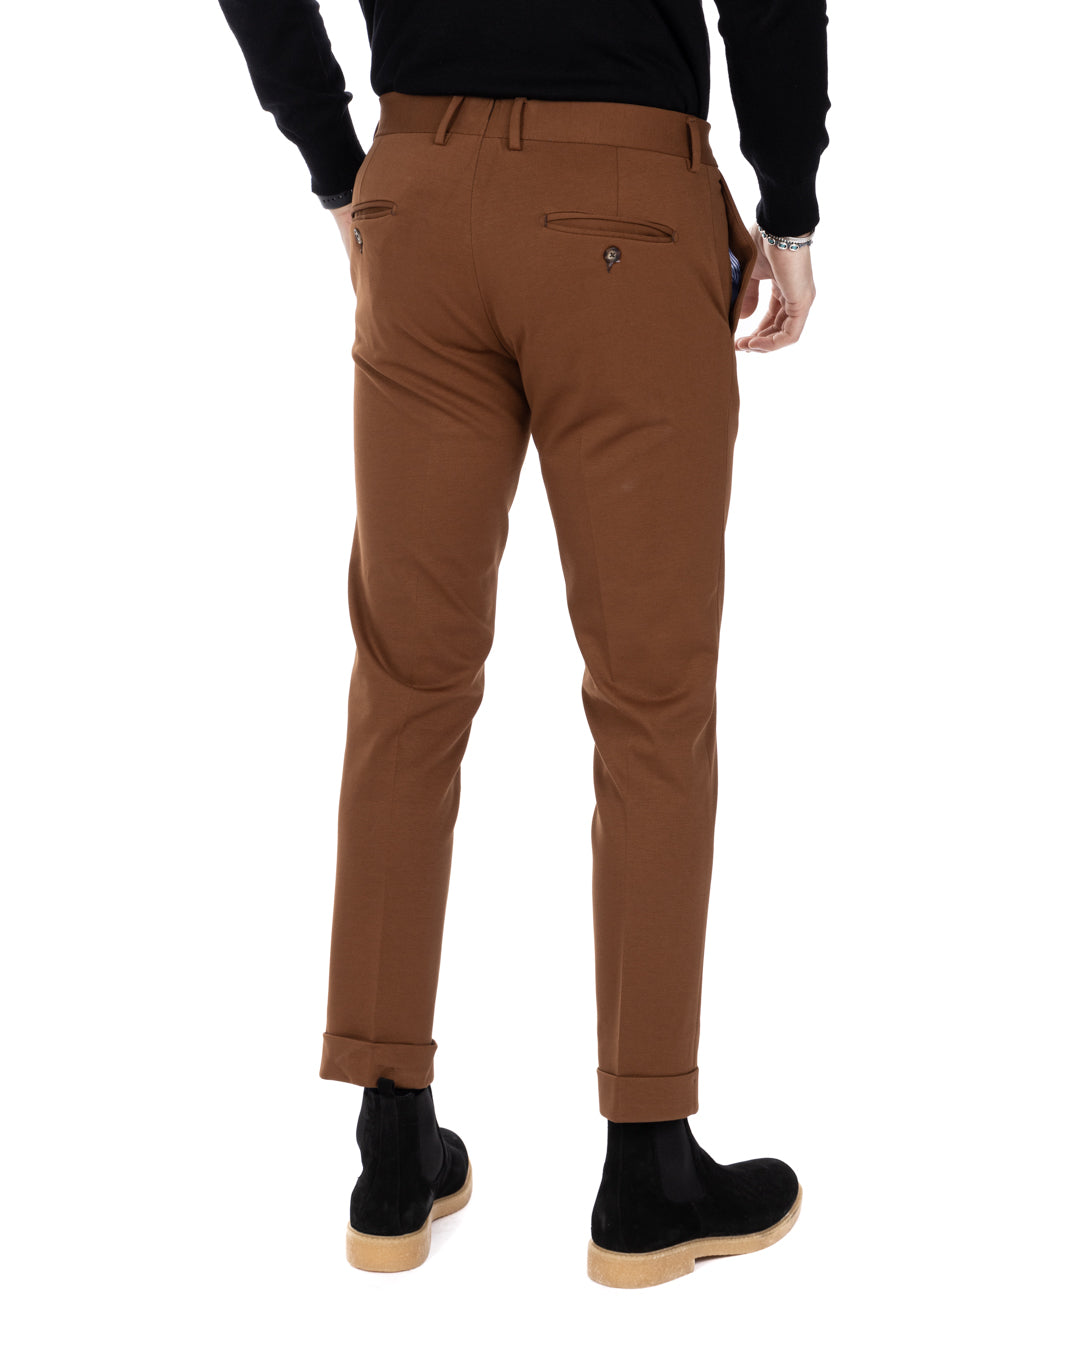 Altamura - classic brown trousers